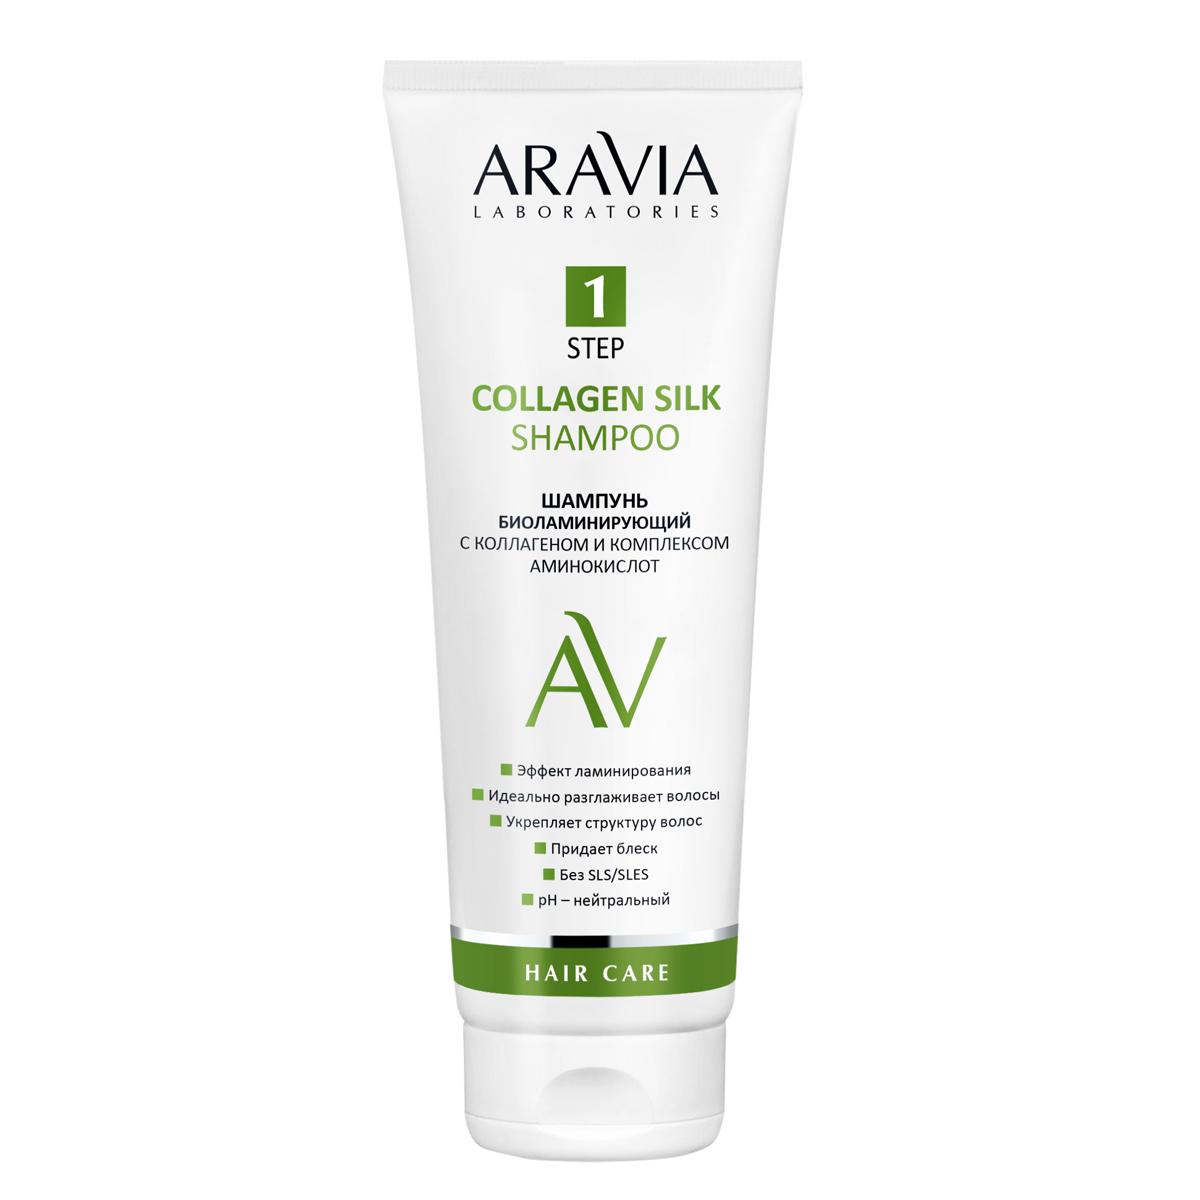 Aravia Laboratories Шампунь биоламинирующий с коллагеном и комплексом аминокислот Collagen Silk Shampoo, 250 мл (Aravia Laboratories, Уход за волосами)